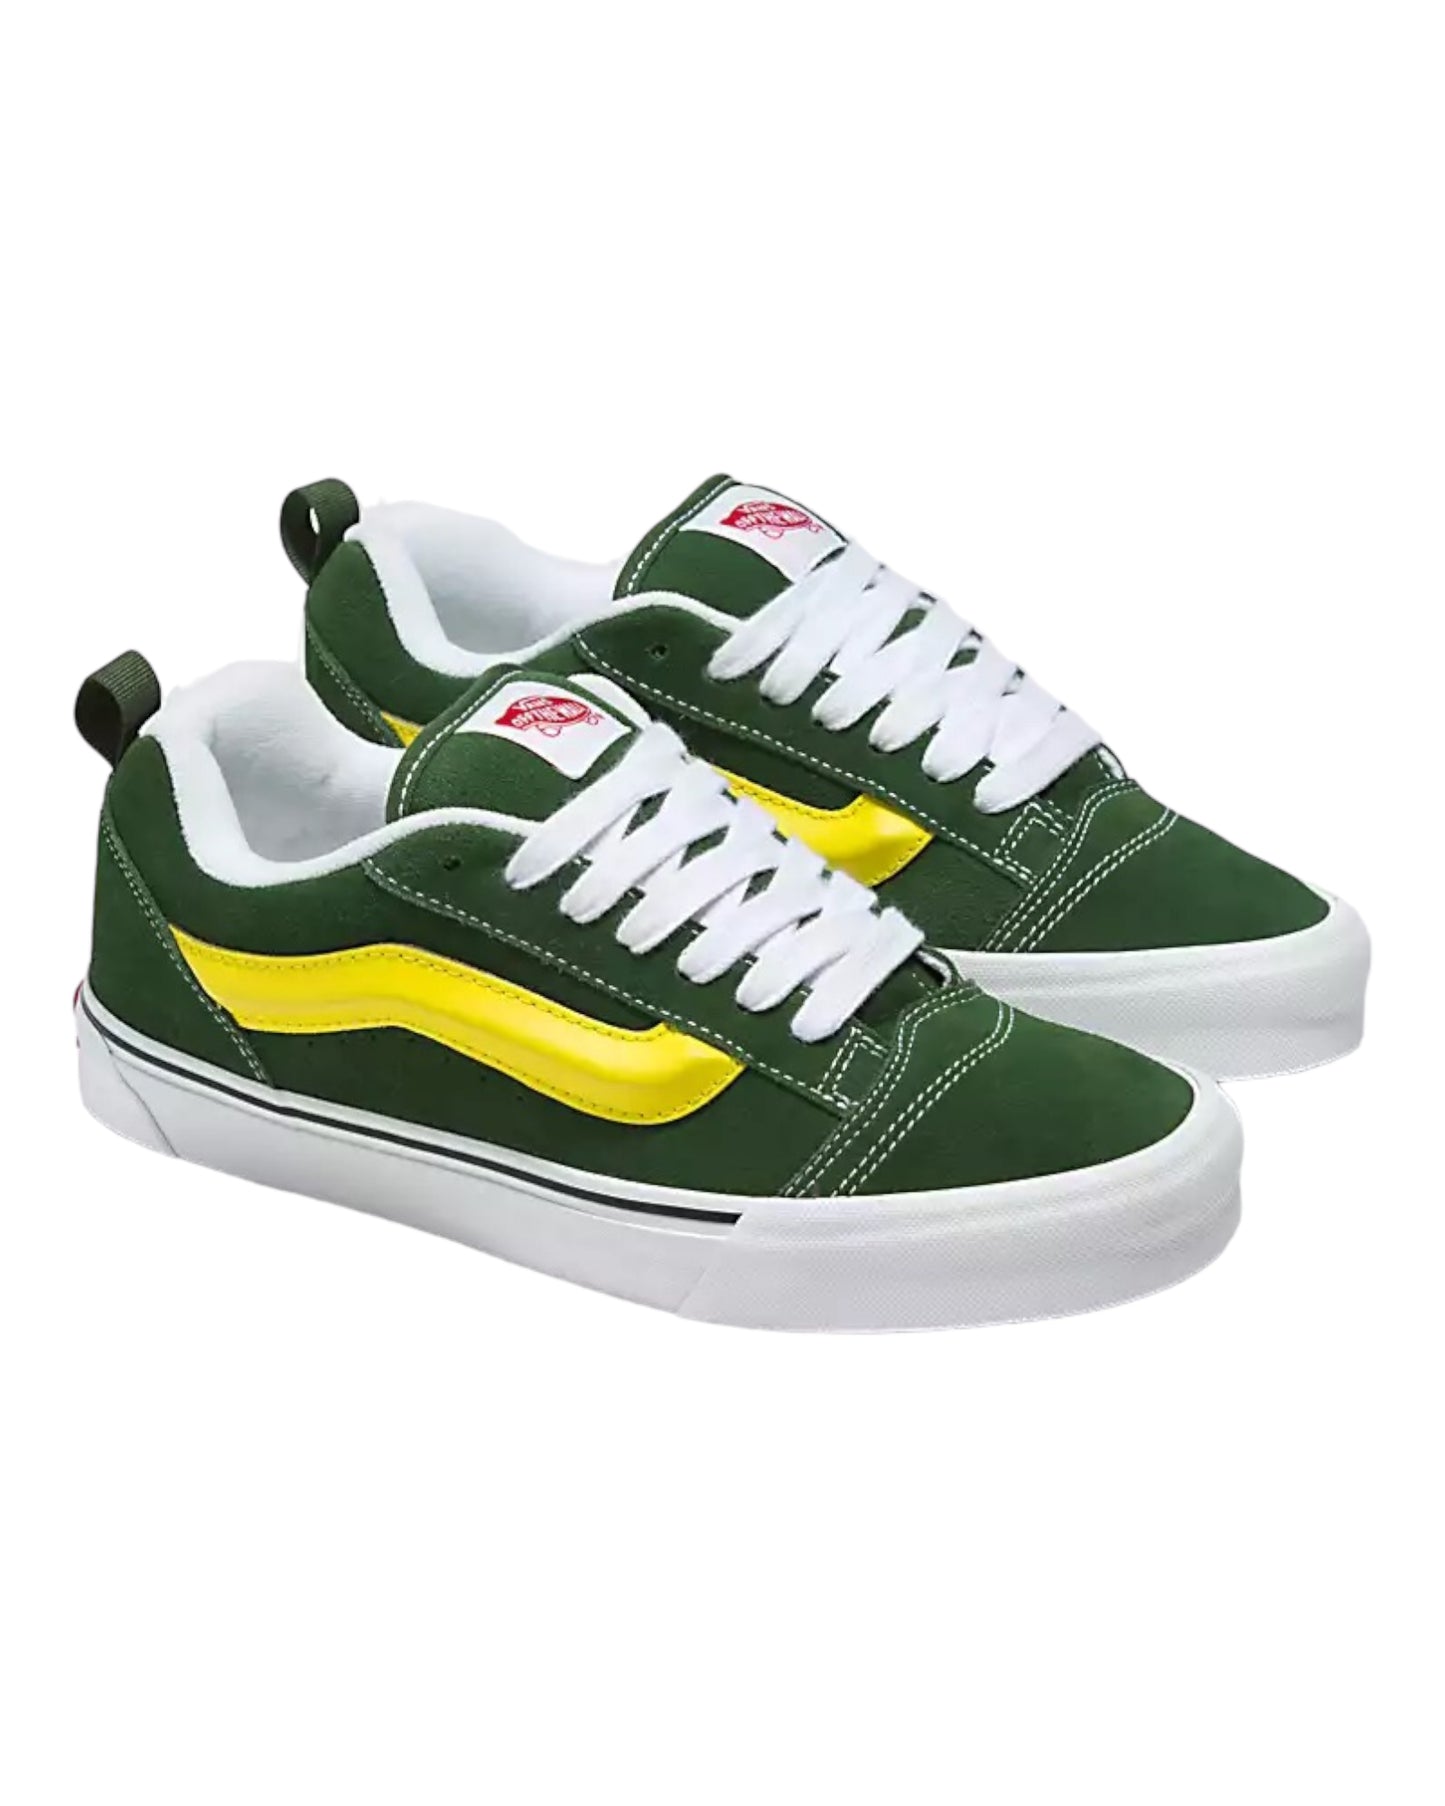 Vans Knu School Shoes Green / Yellow